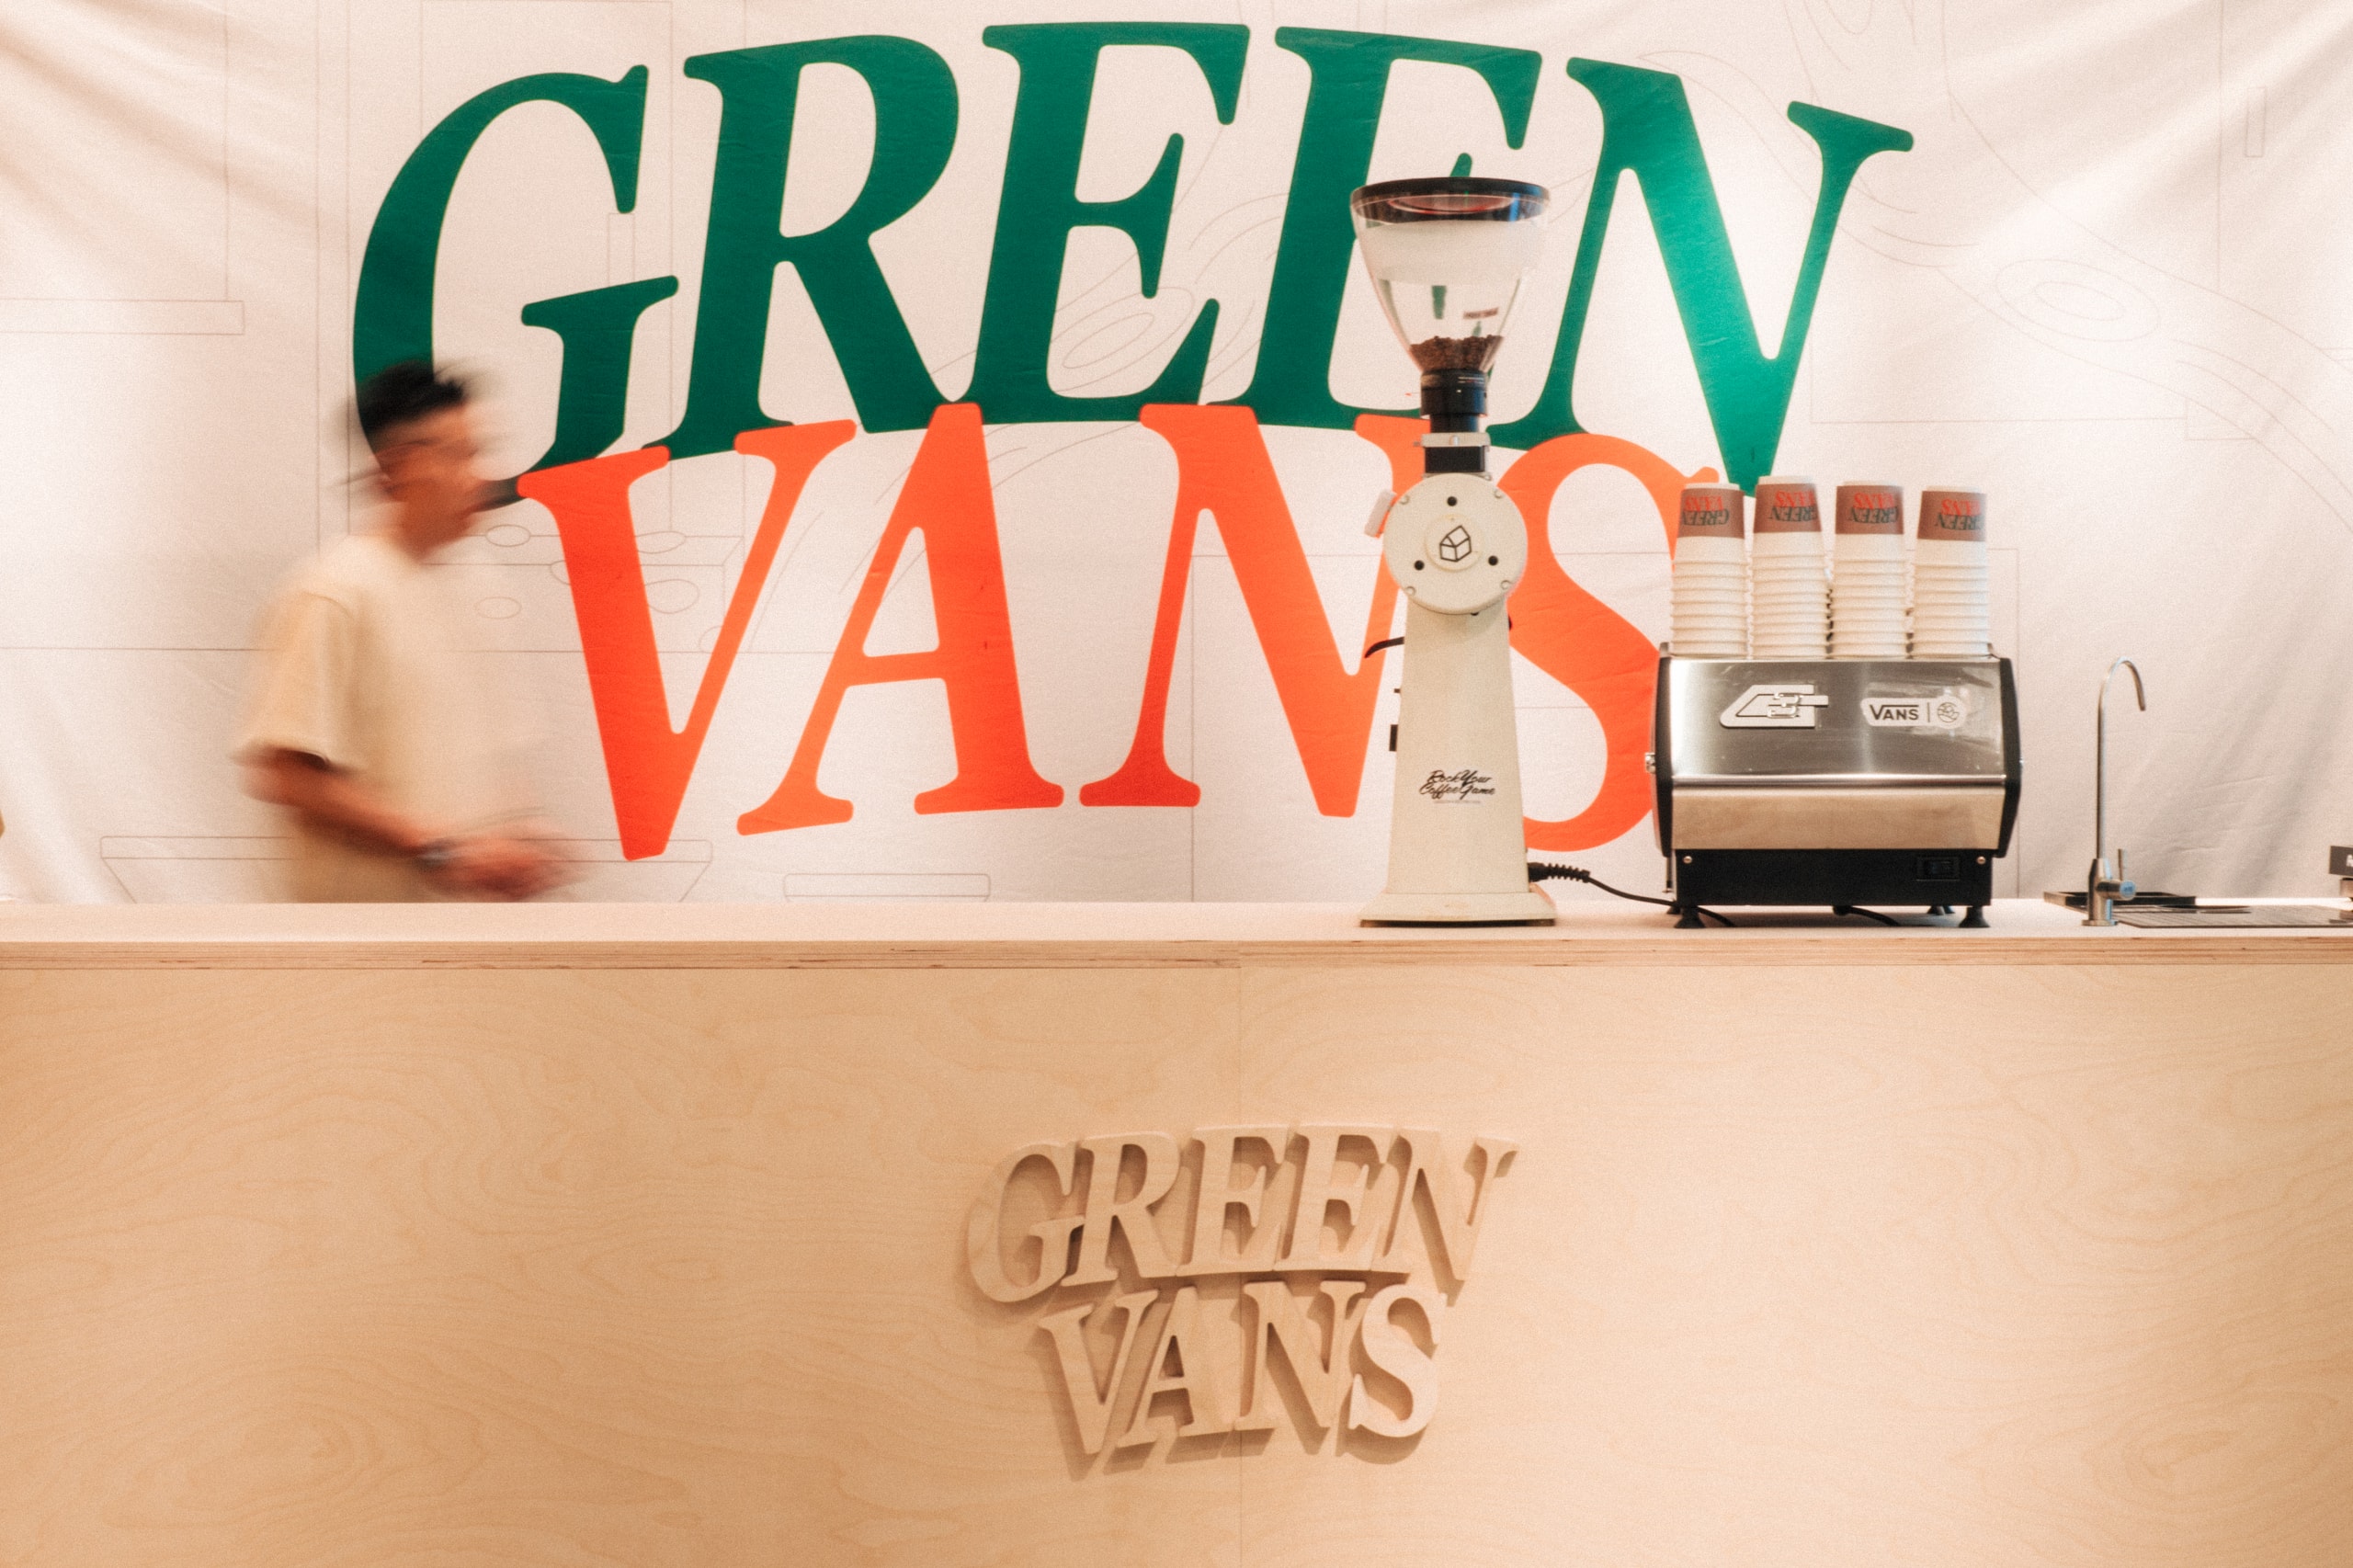 創意單位及咖啡店 GREEN HOUSE 攜手 VANS 開設「GREEN VANS 限時咖啡店」